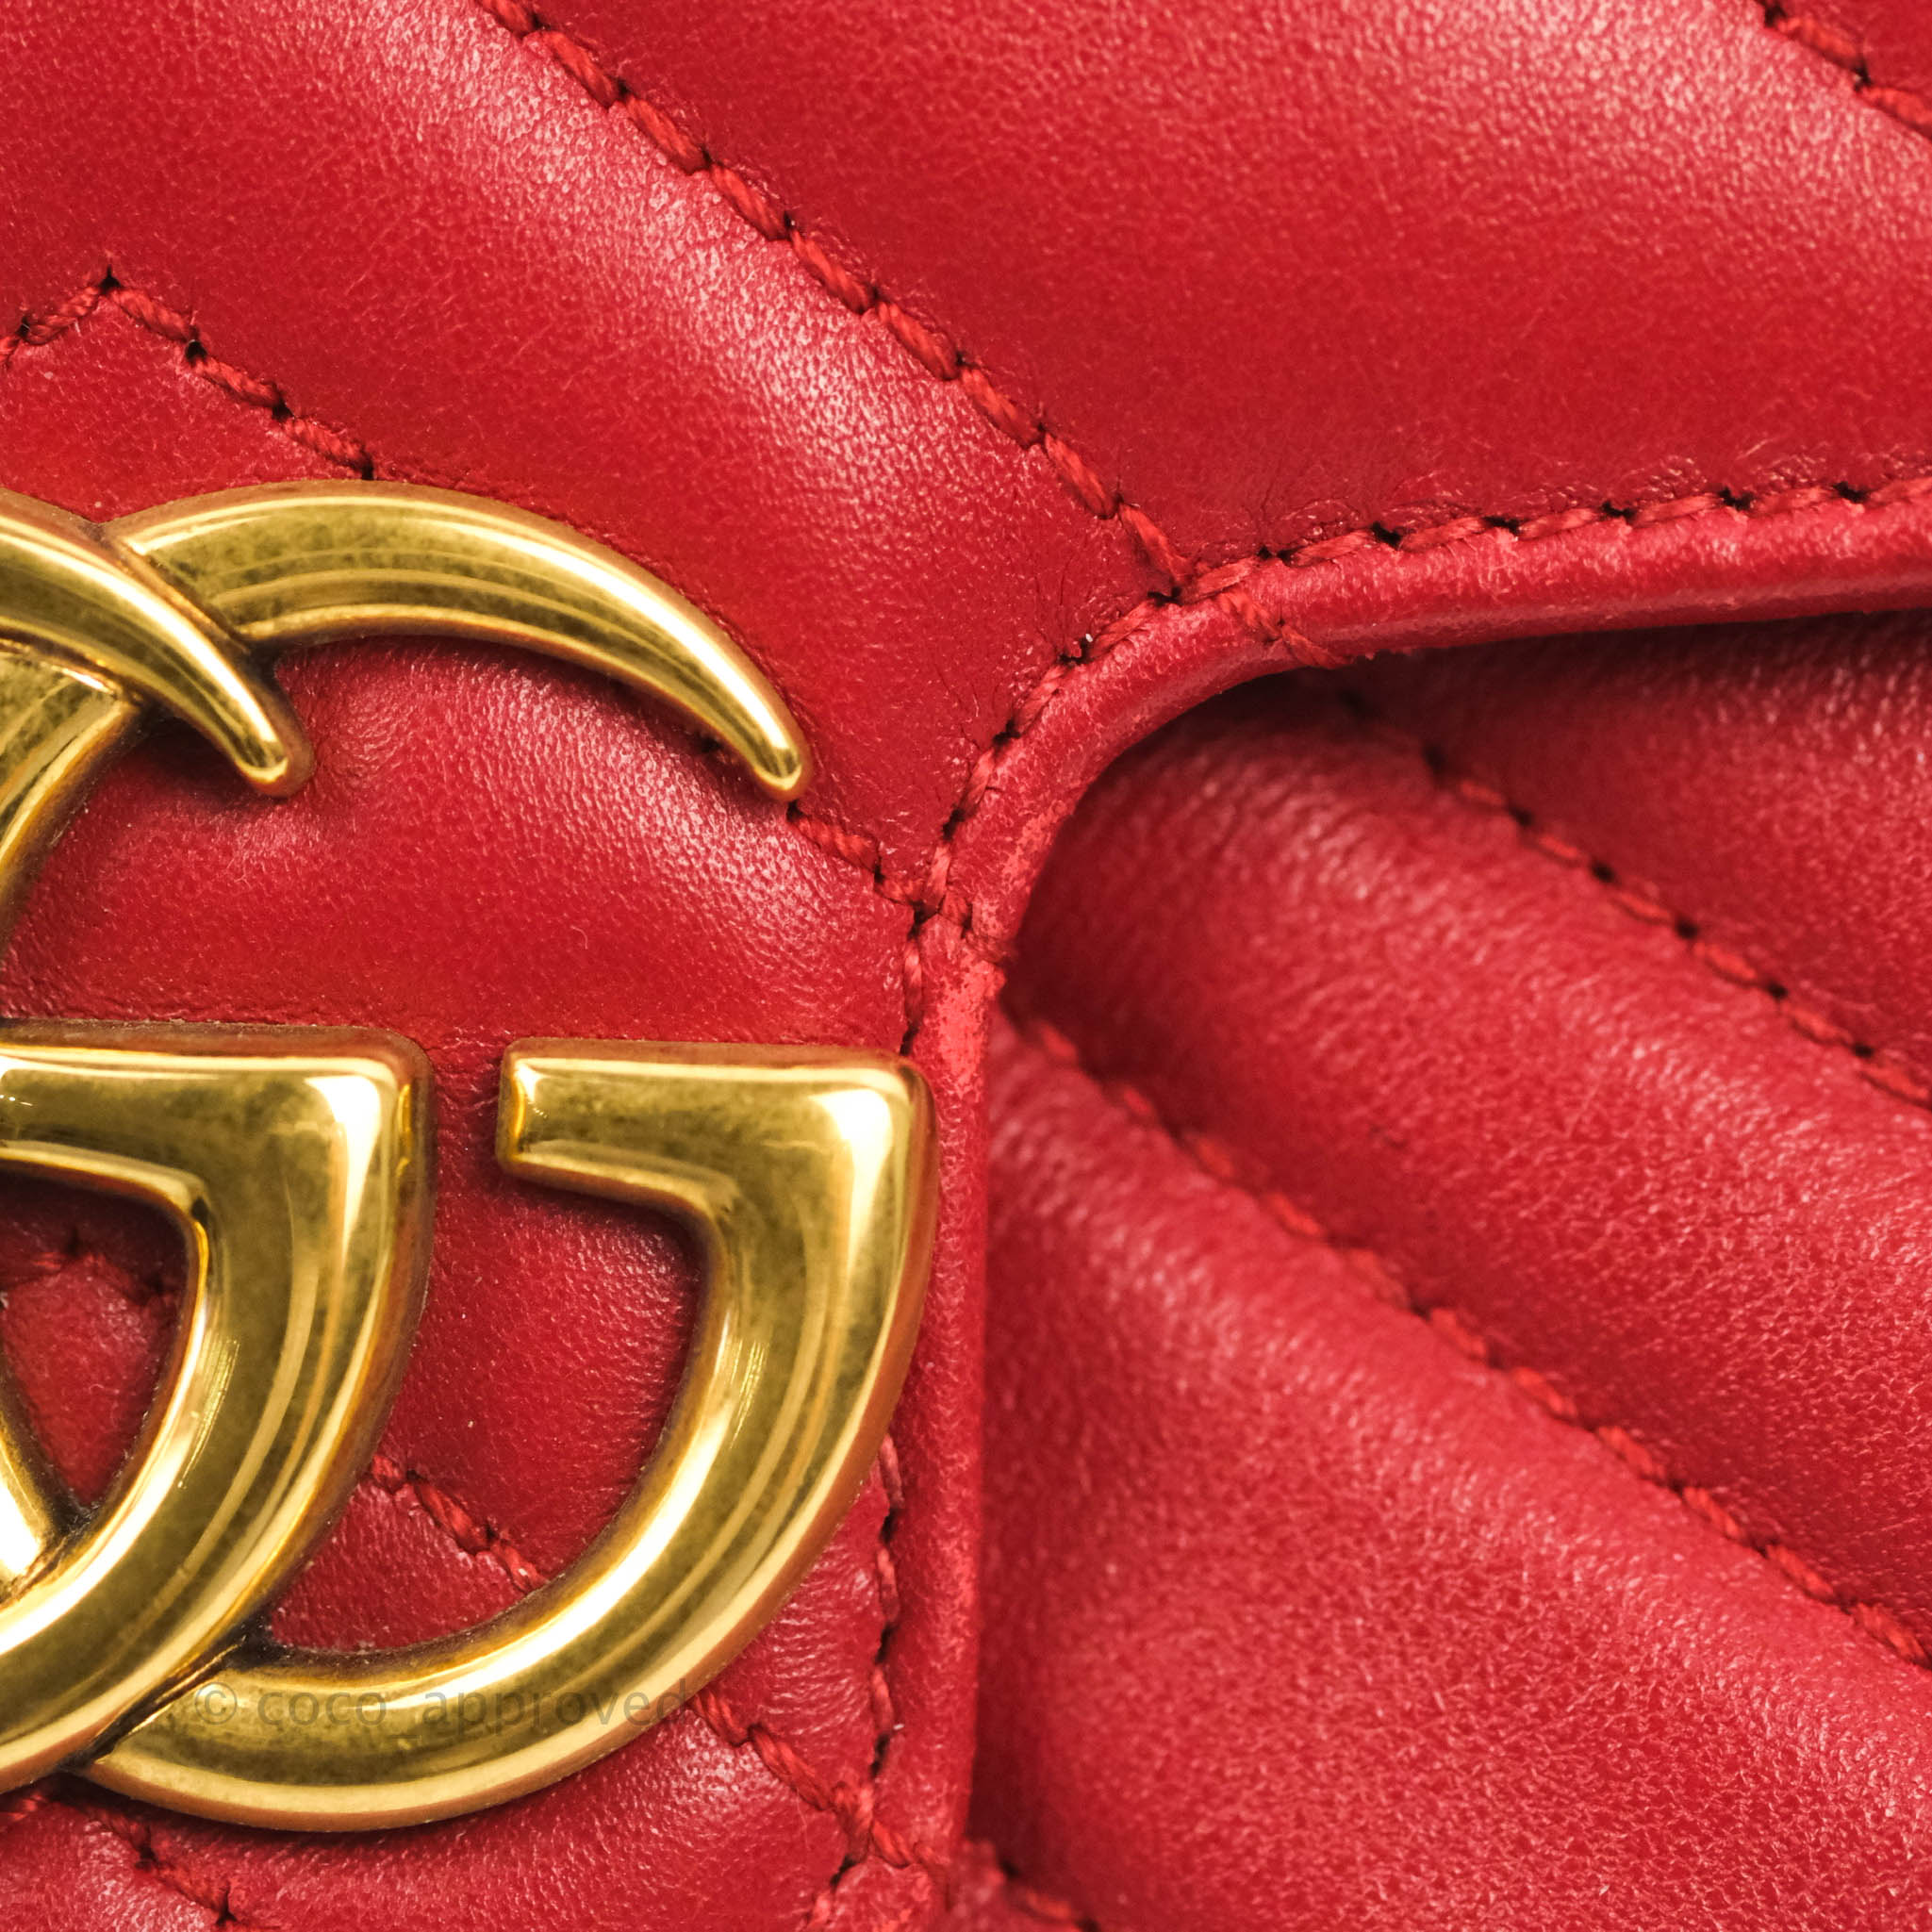 Gucci Red Matelassé Leather Mini GG Marmont Camera Bag Gucci